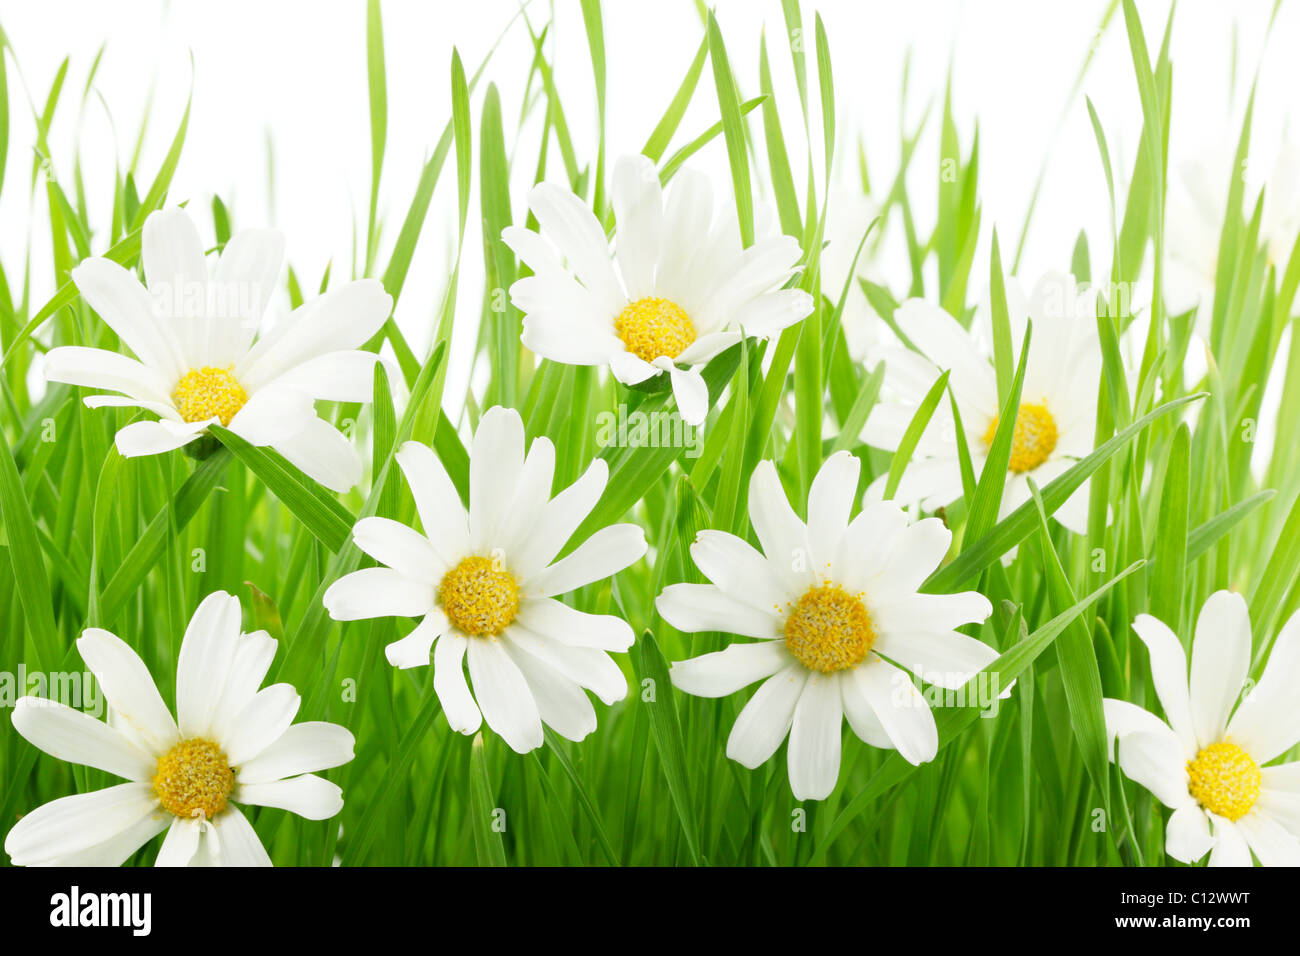 Marguerite blanche fleurs dans l'herbe verte Banque D'Images